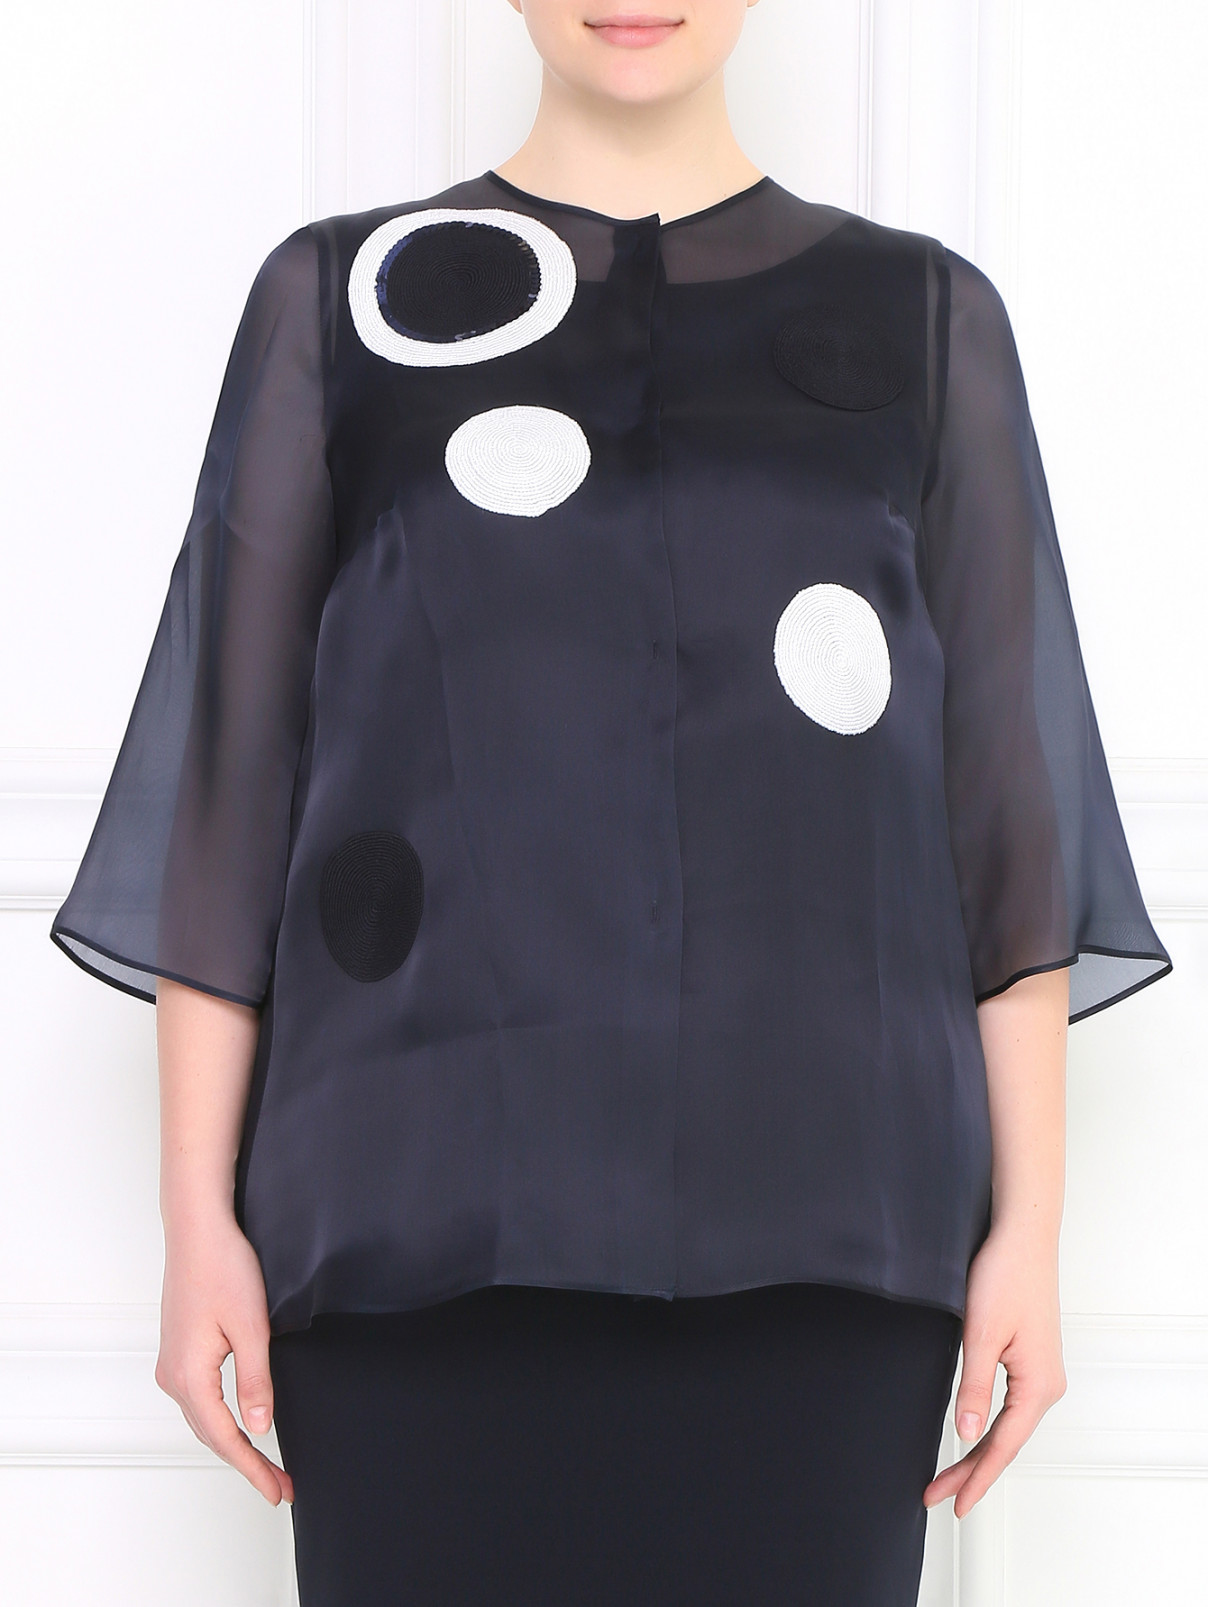 Жакет из шелка с вышивкой Marina Rinaldi  –  Модель Общий вид  – Цвет:  Синий